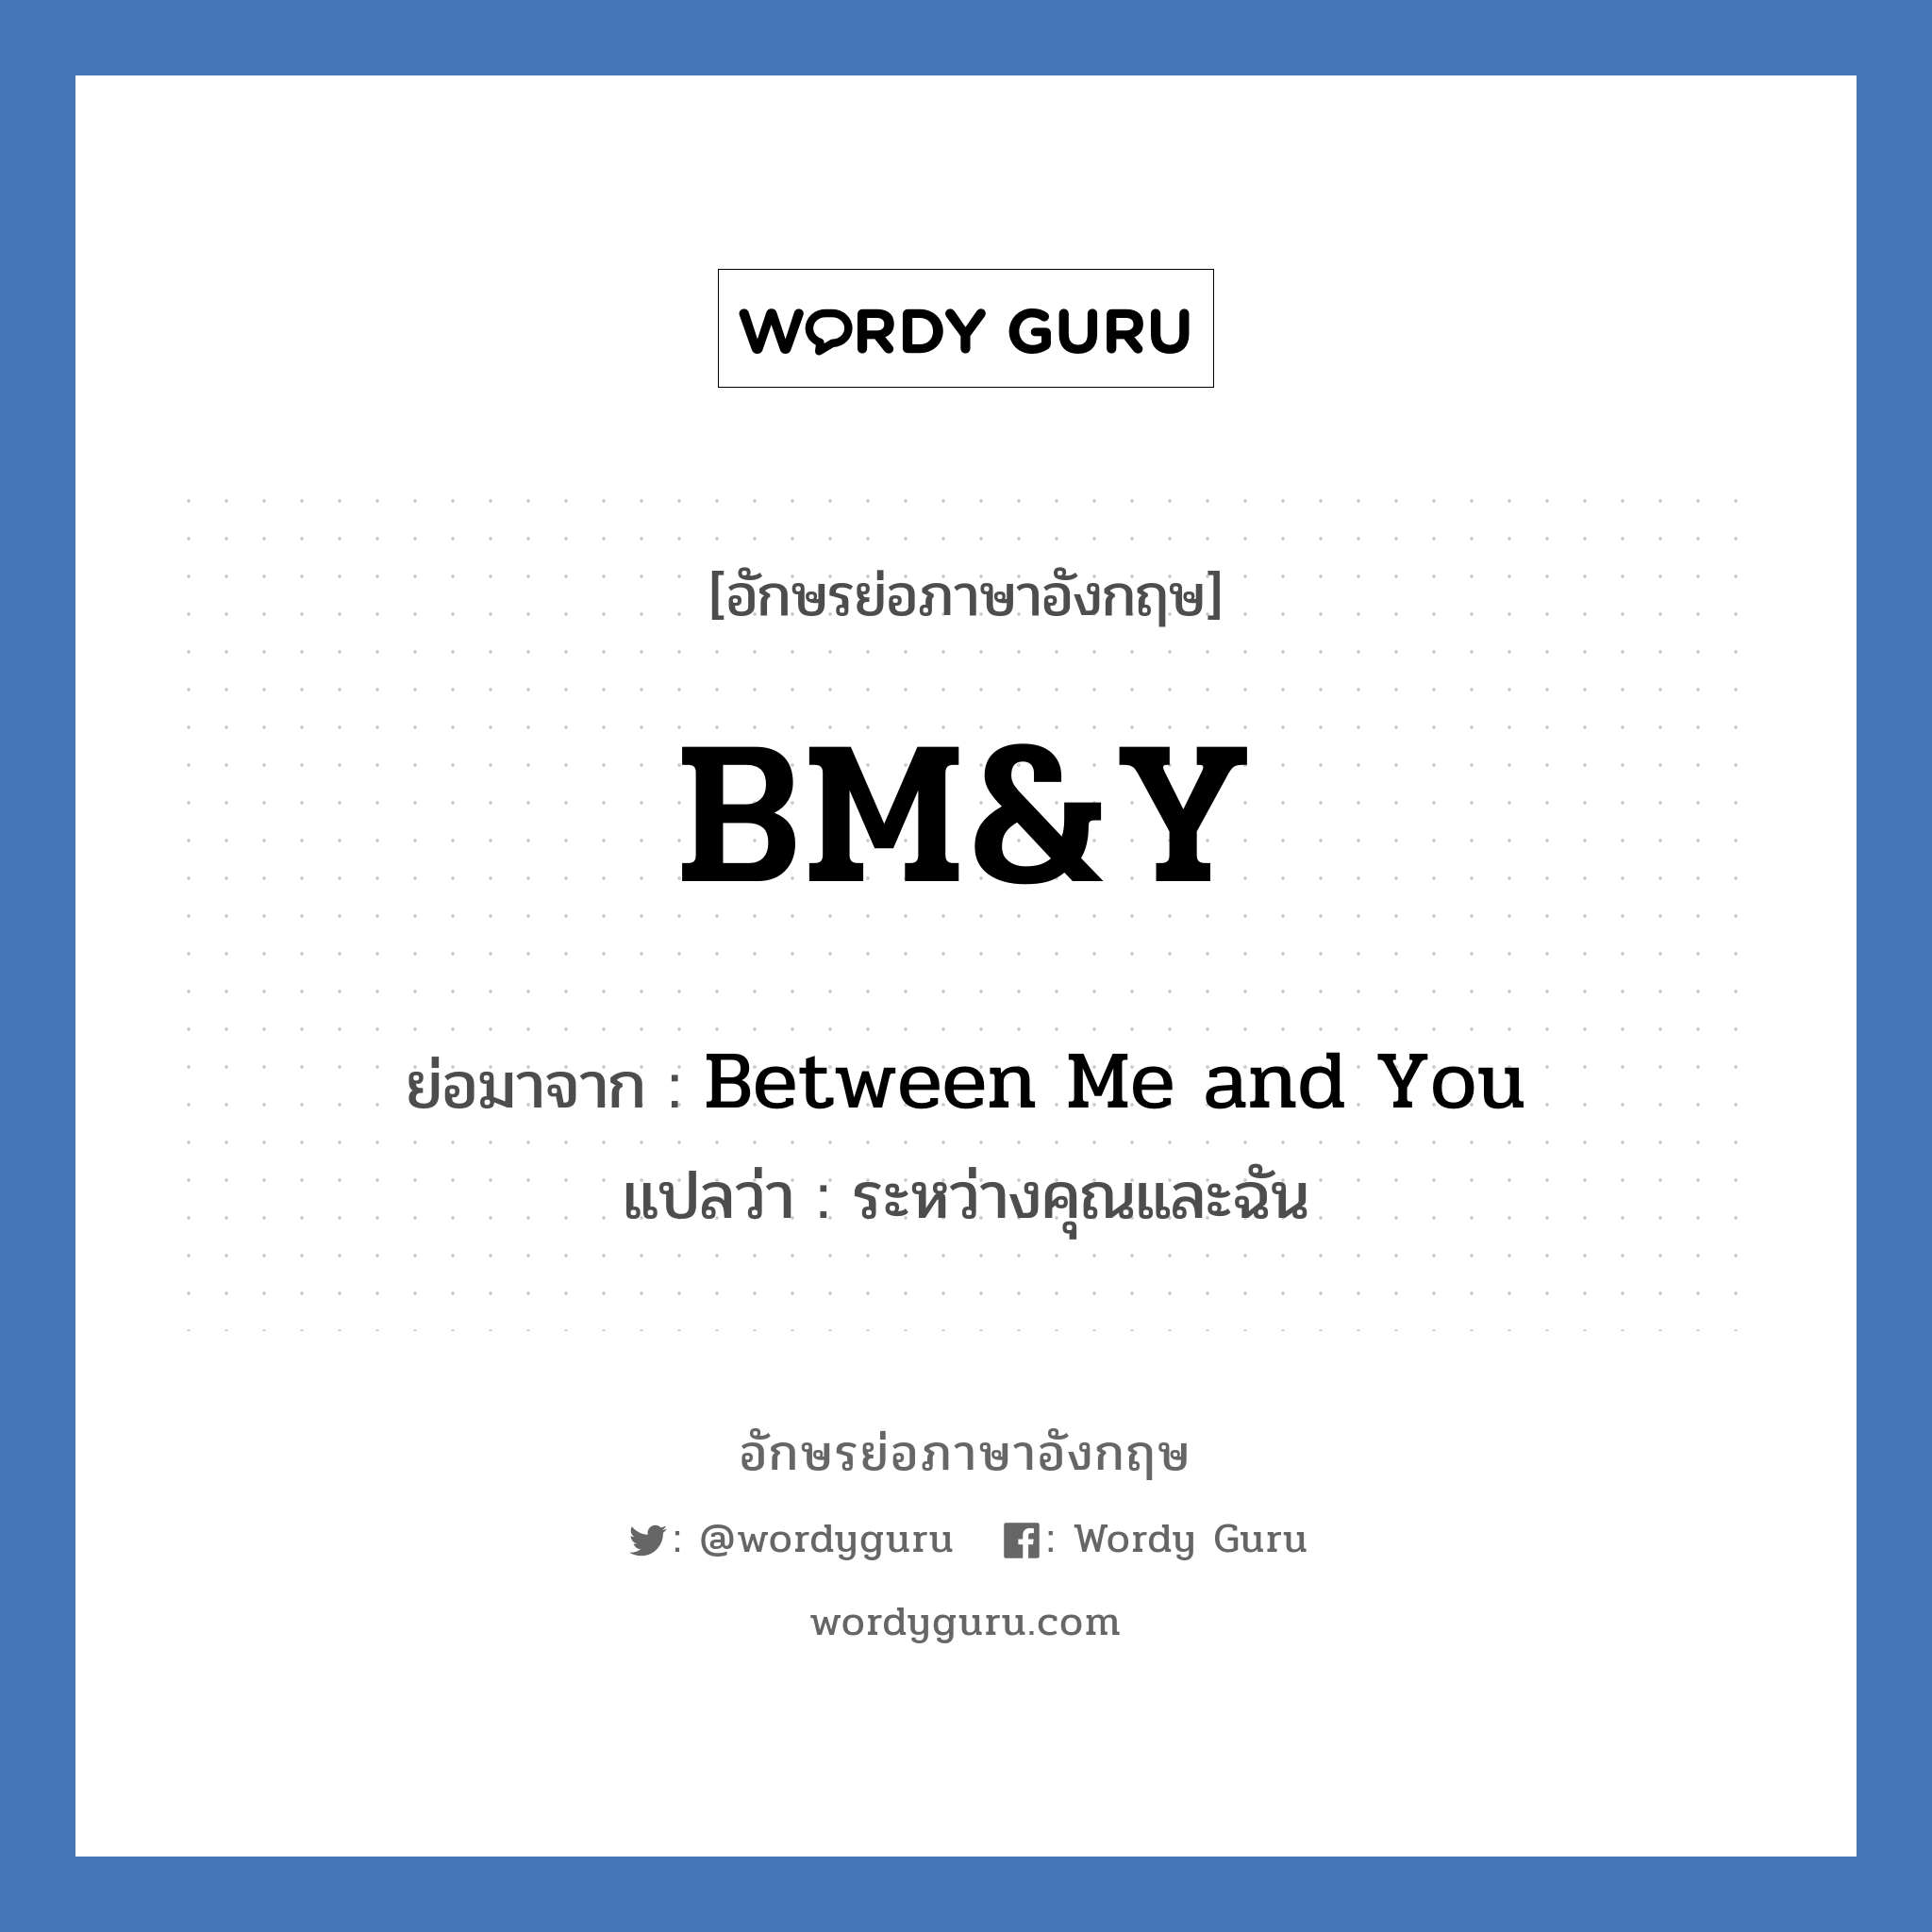 Between Me and You คำย่อคือ? แปลว่า?, อักษรย่อภาษาอังกฤษ Between Me and You ย่อมาจาก BM&Y แปลว่า ระหว่างคุณและฉัน